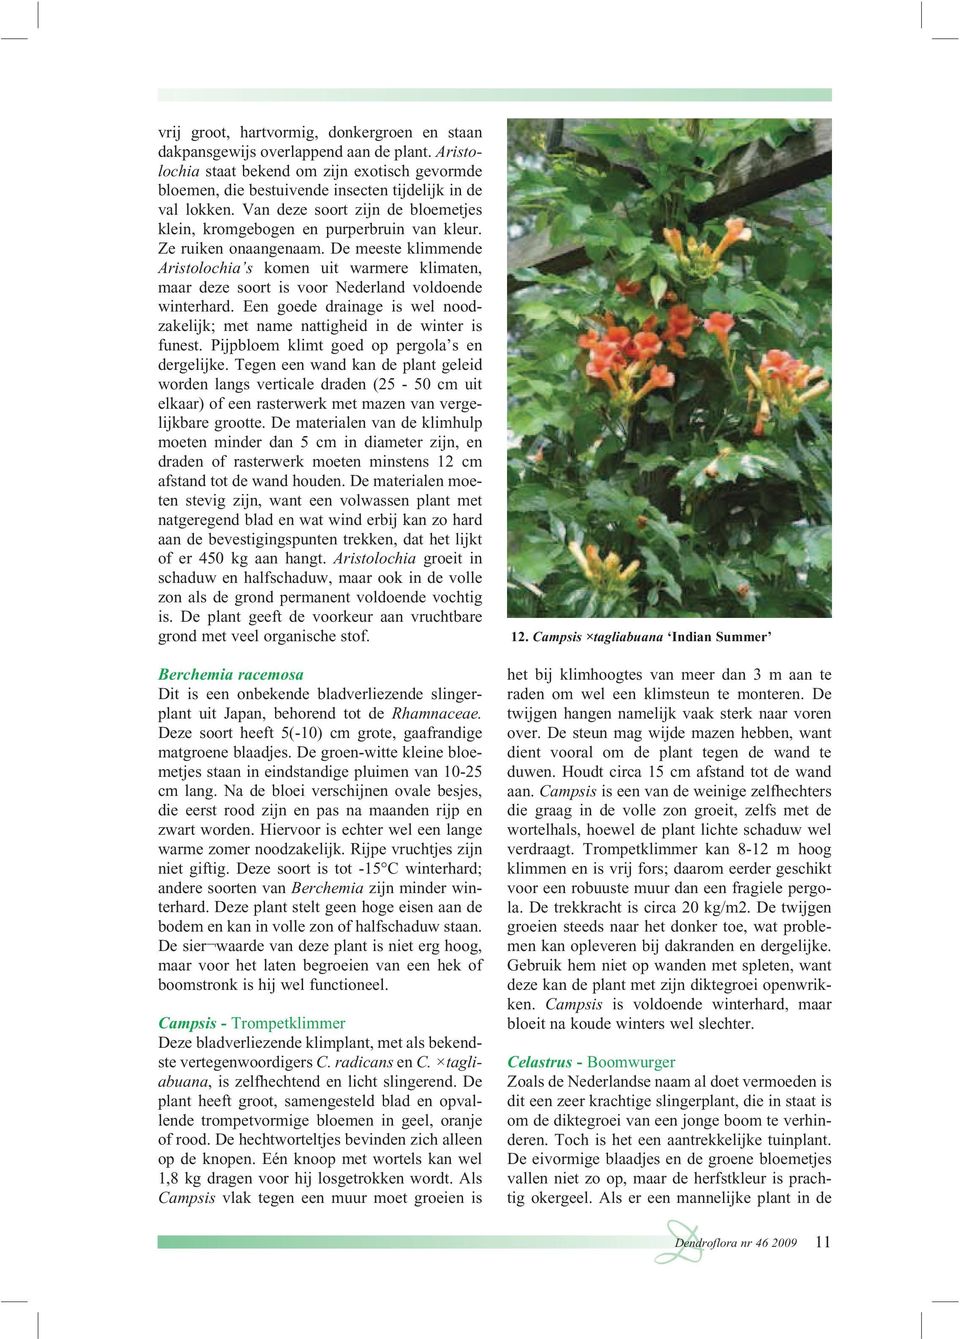 De meeste klimmende Aristolochia s komen uit warmere klimaten, maar deze soort is voor Nederland voldoende winterhard.